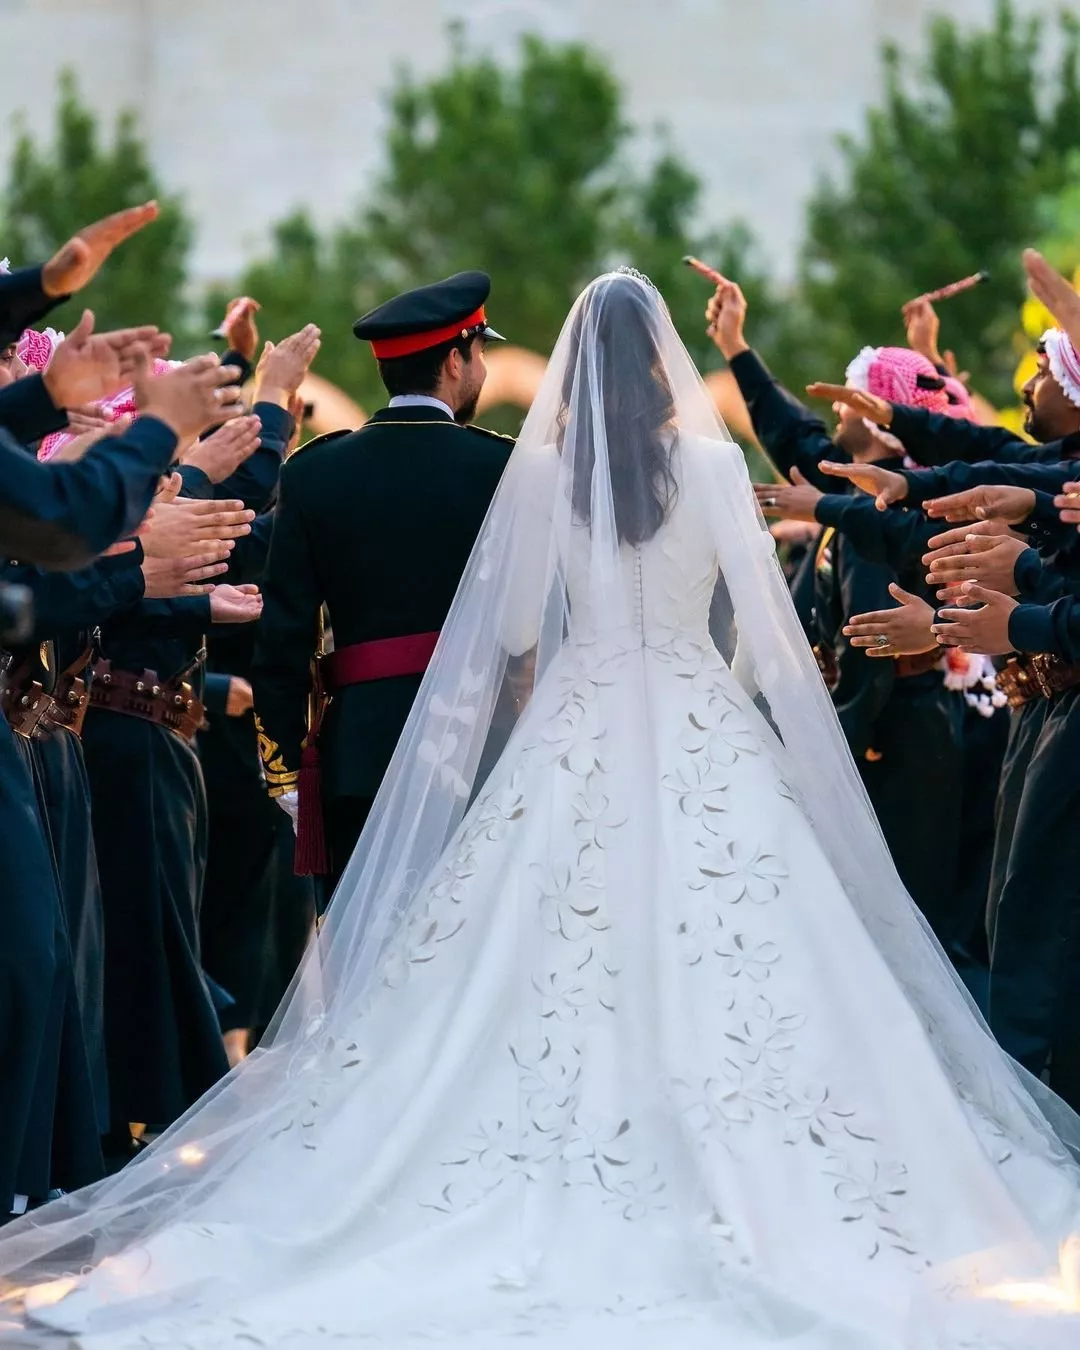 بالصور، إطلالة أنثوية كلاسيكية للعروس رجوة ال سيف في يوم زفافها من الامير حسين